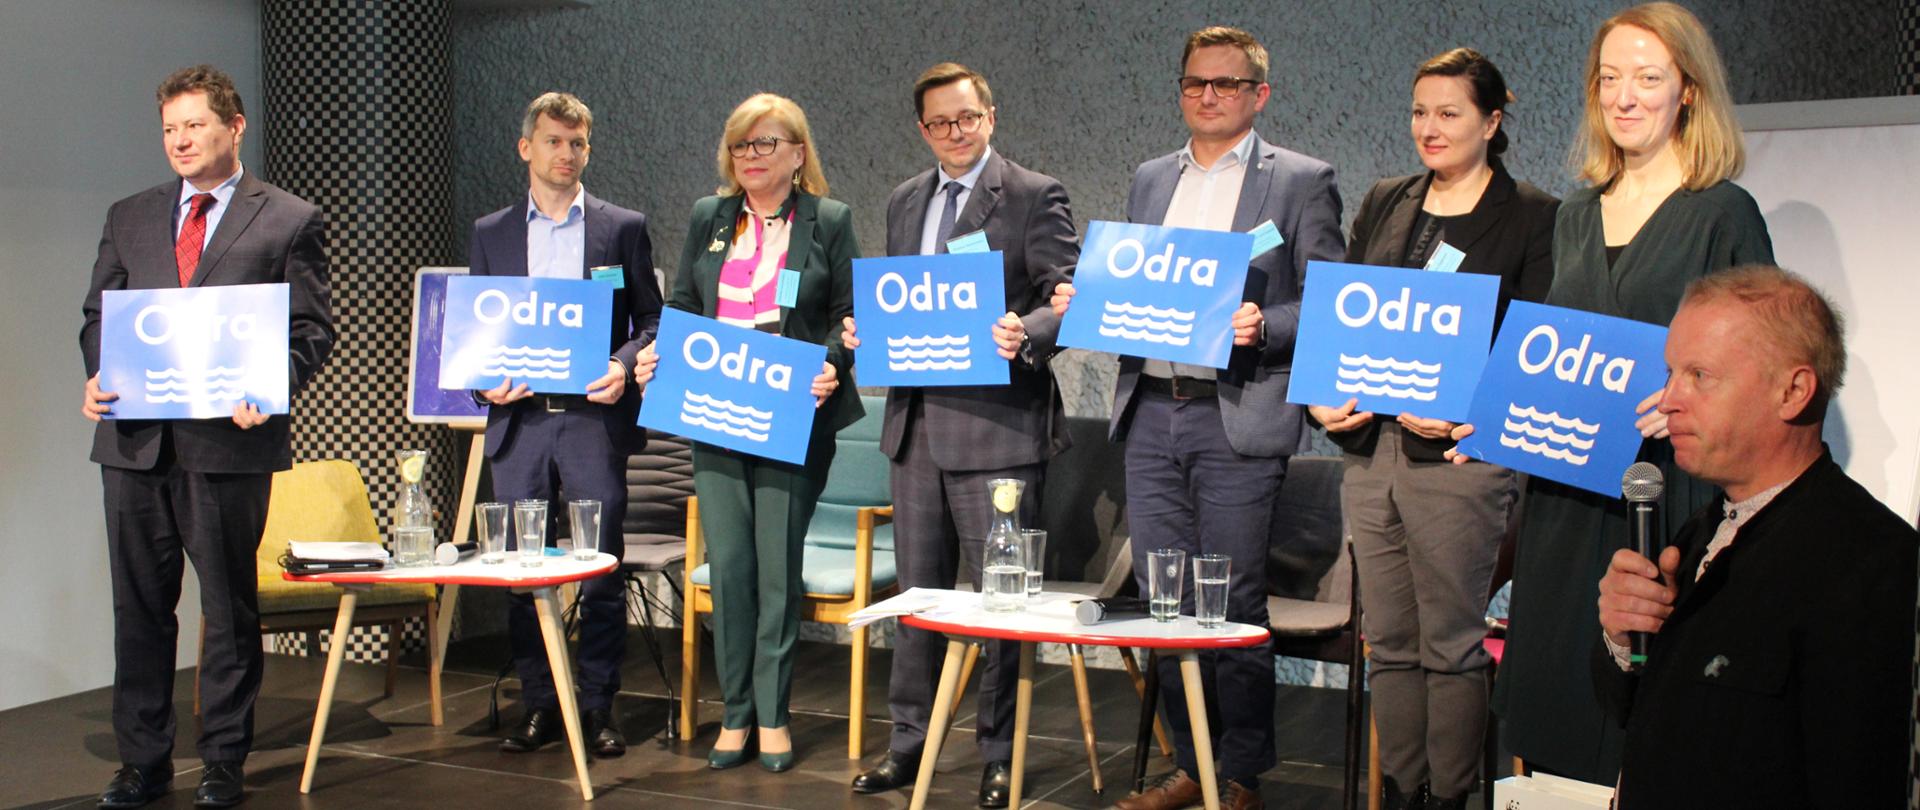 Debata panelowa we Wrocławiu z udziałem ekspertów na temat Odry.